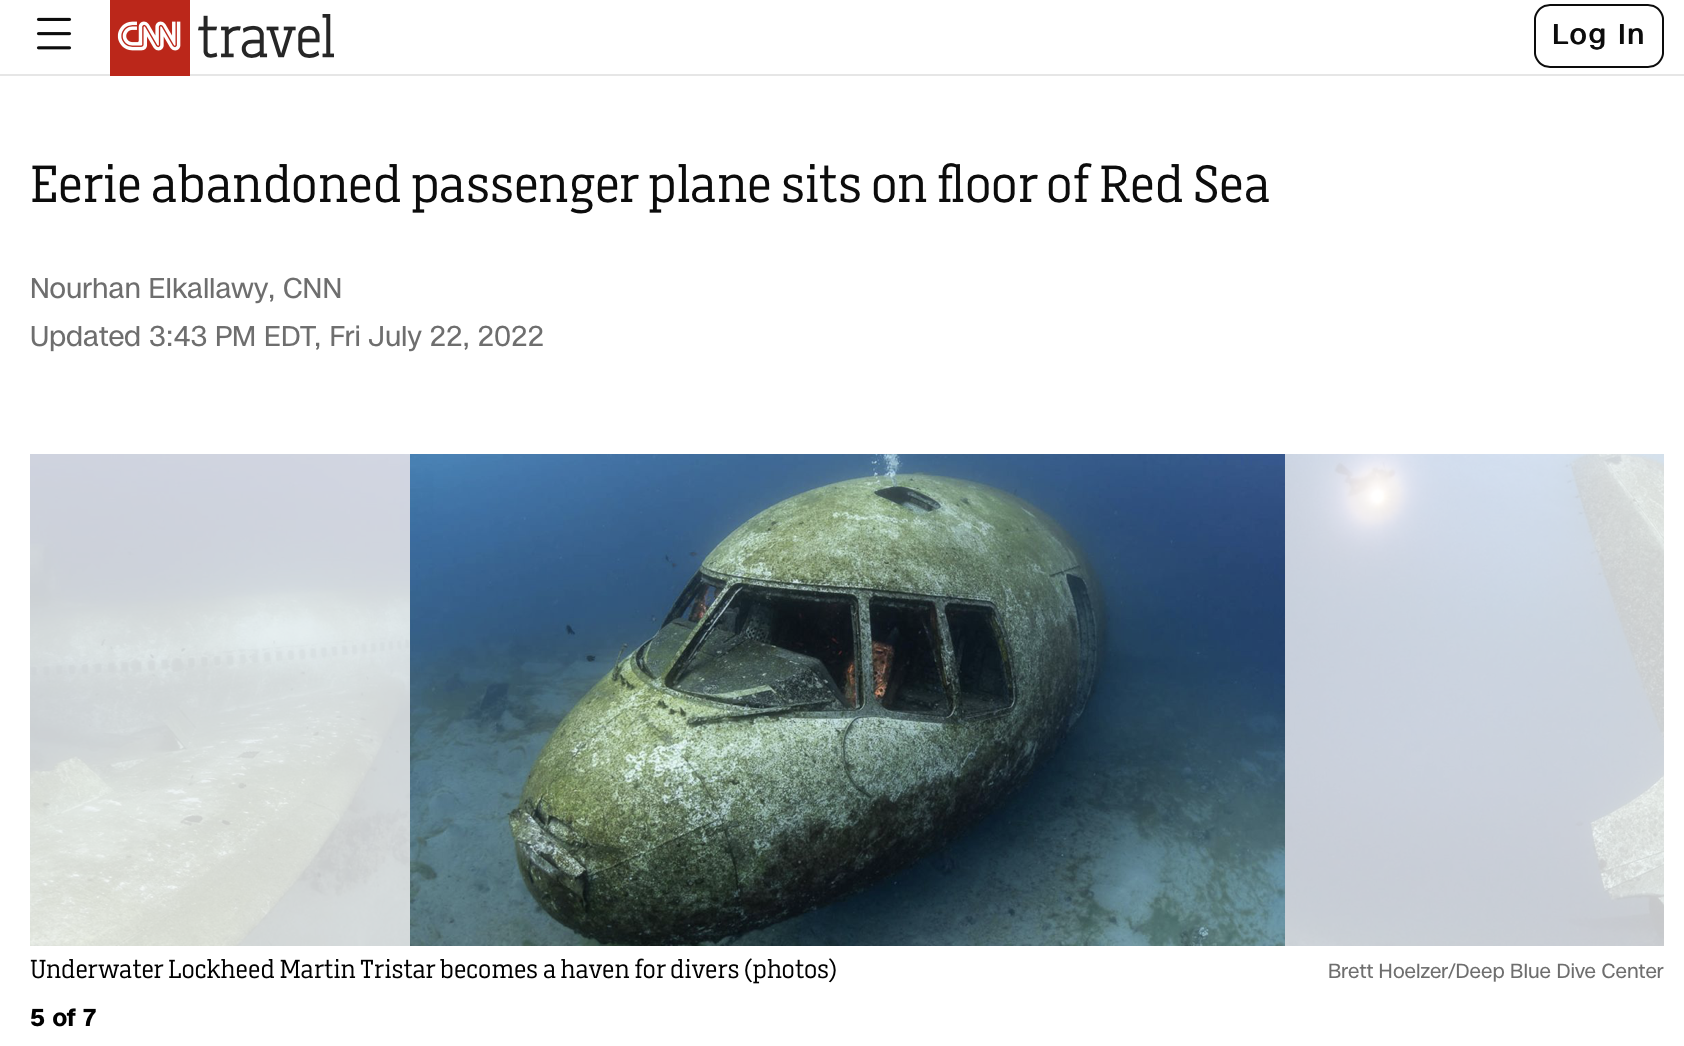 Пропавший без вести рейс MH370 Malaysia Airlines нашли в Красном море